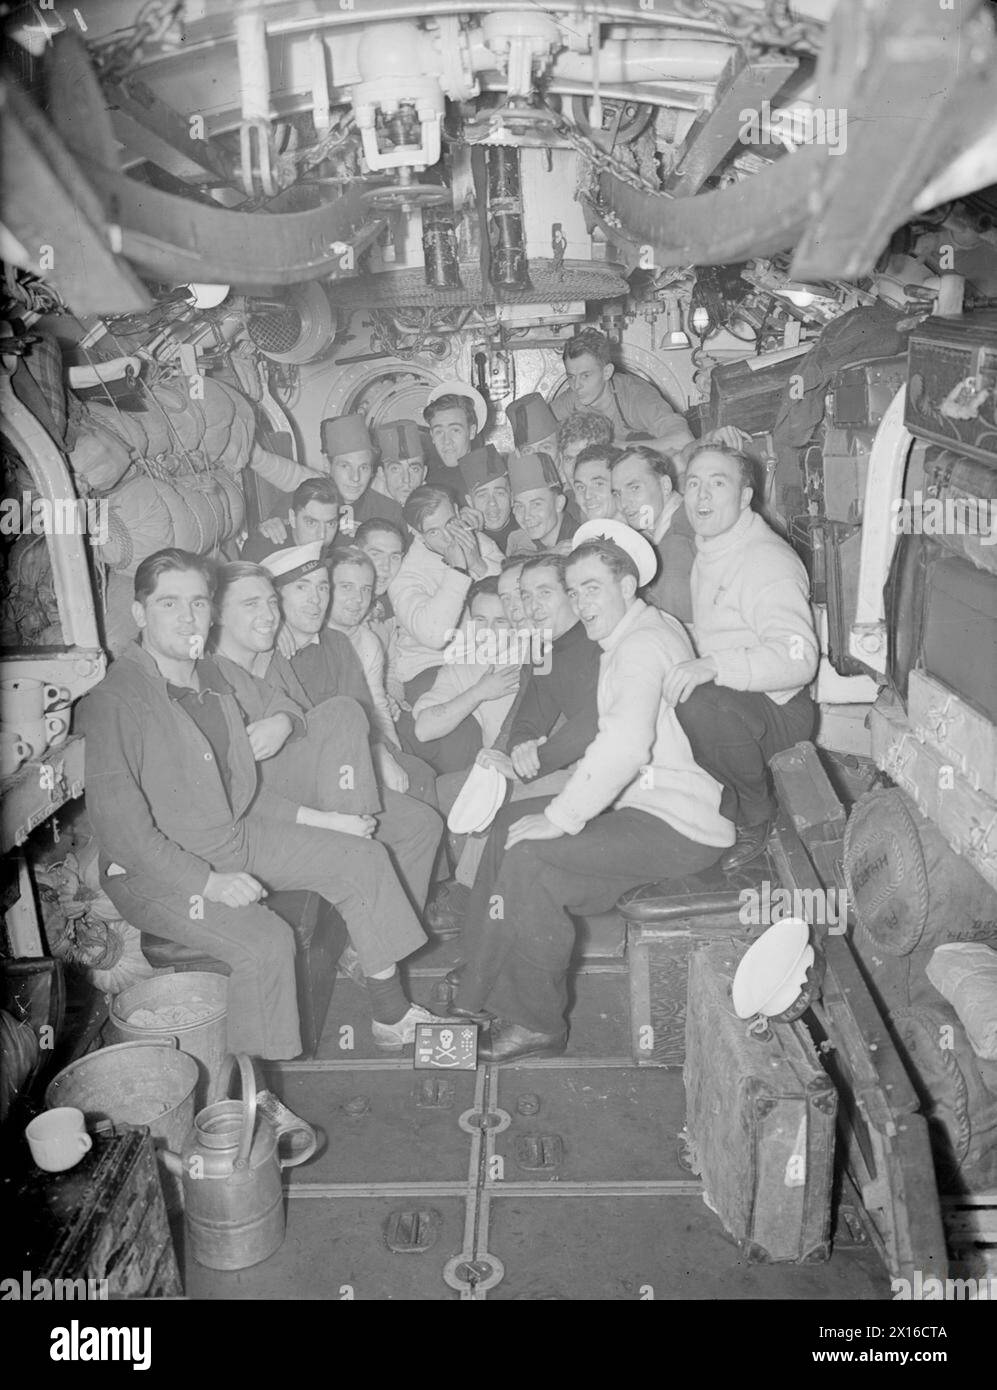 LE SOUS-MARIN BRITANNIQUE HMS STORM REVIENT DE L'EXTRÊME-ORIENT. 8 AVRIL 1945, PORTSMOUTH. HOMMES DE LA TEMPÊTE À LEUR RETOUR EN GRANDE-BRETAGNE APRÈS UNE COMMISSION RÉUSSIE EN EXTRÊME-ORIENT. - Hommes de la TEMPÊTE célébrant leur retour au Royaume-Uni dans le fo'c'sle Banque D'Images